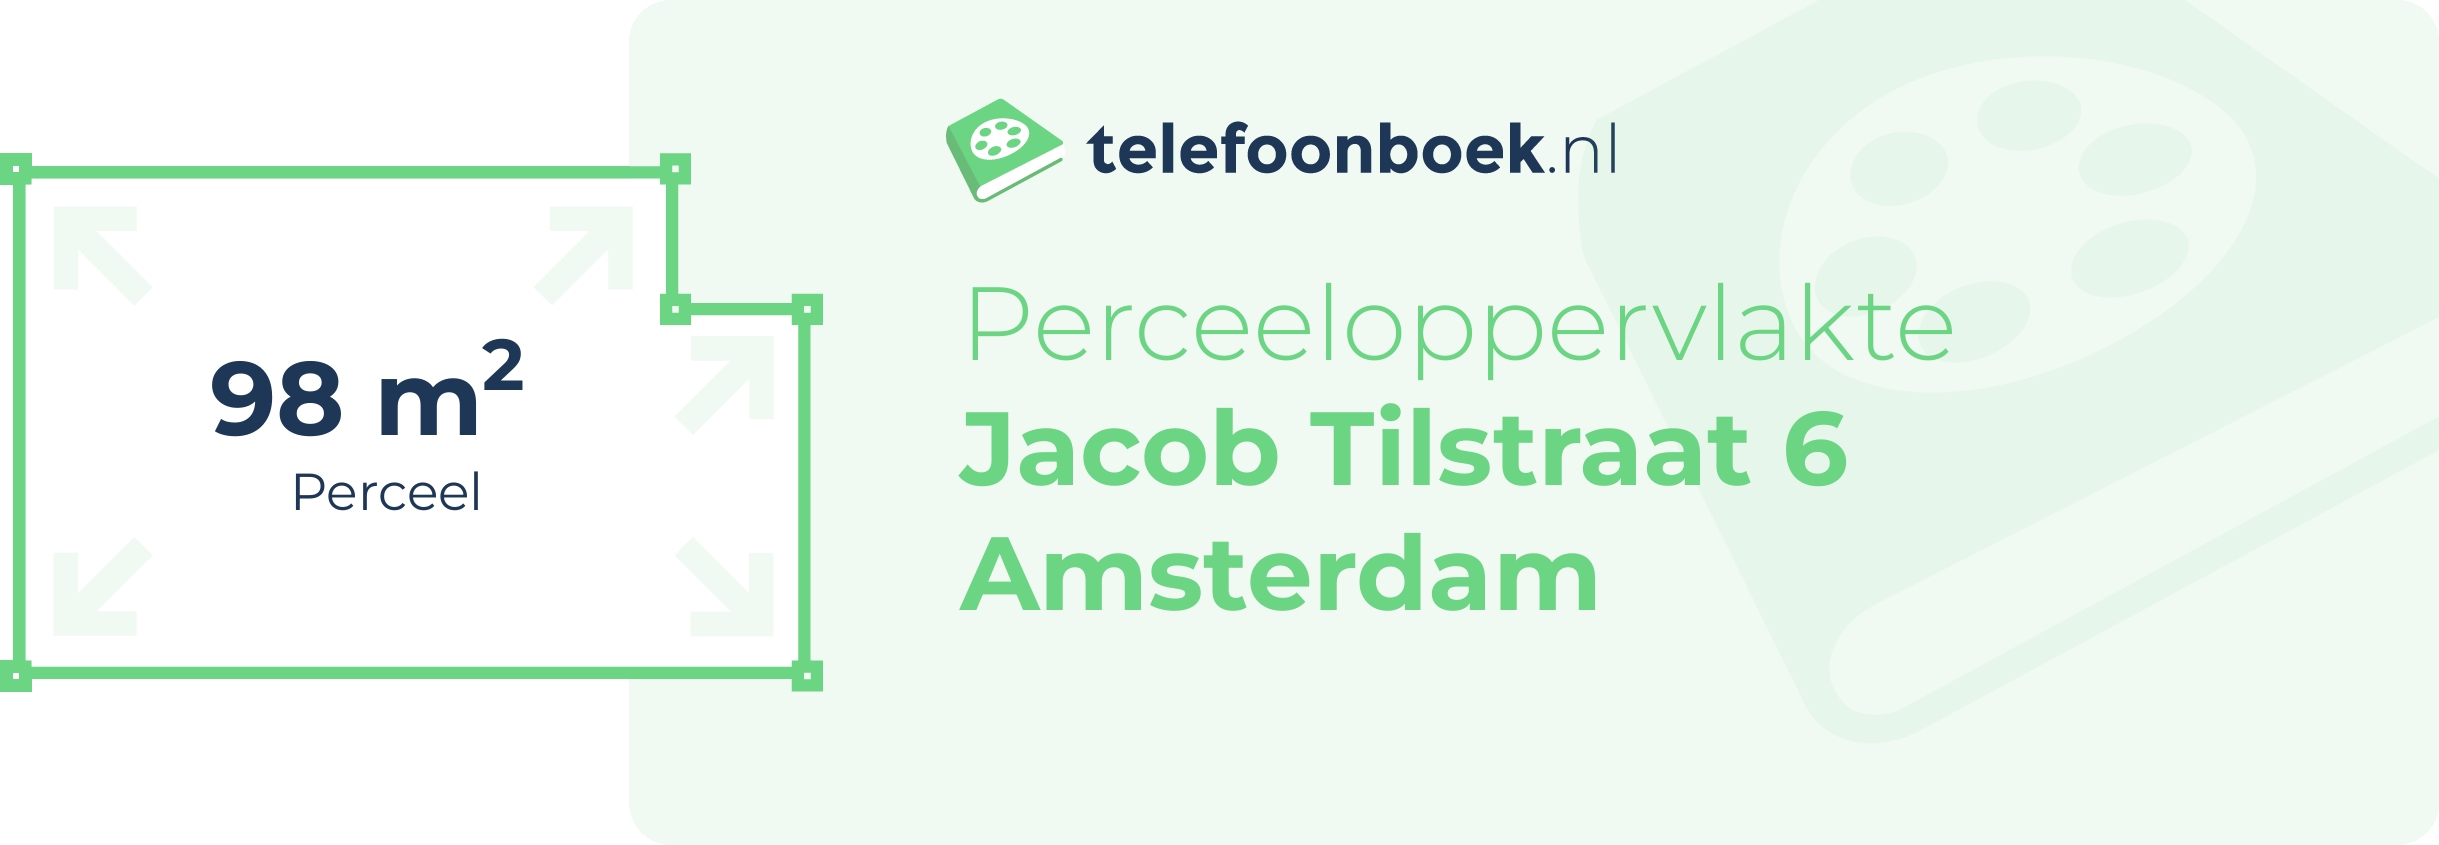 Perceeloppervlakte Jacob Tilstraat 6 Amsterdam